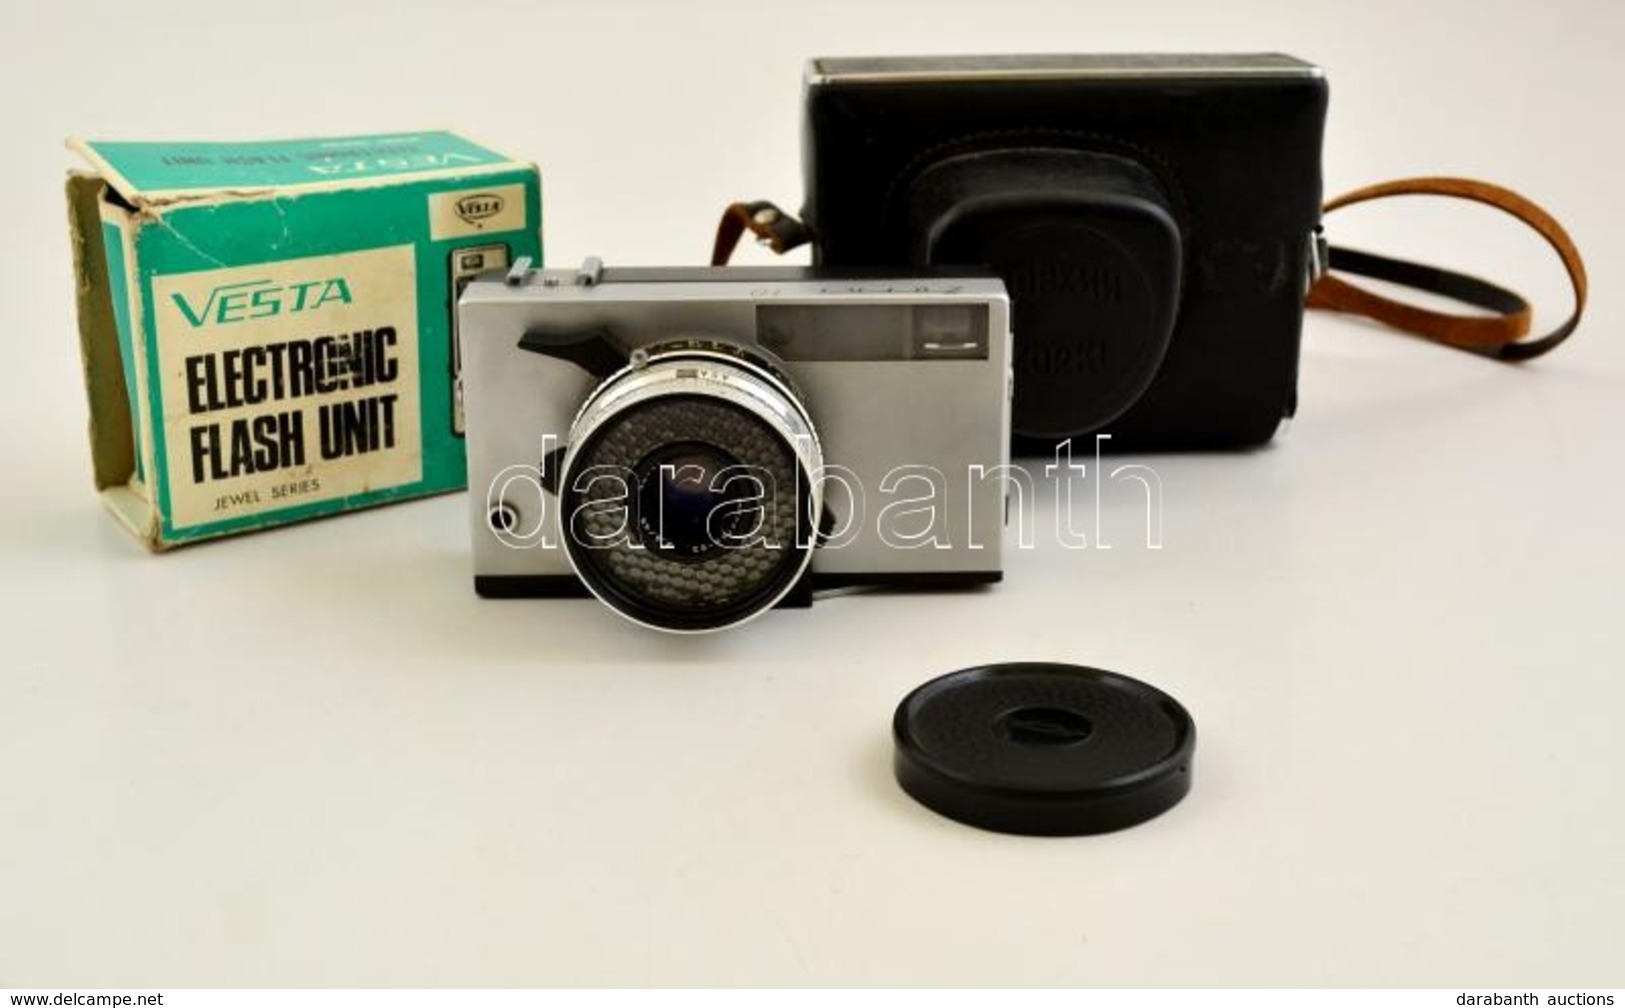 Zorki (Zorkij) 10 Távmérős Fényképezőgép, Industar-63 45mm F/2.8 Objektívvel, Eredeti Bőr Tokjában, Működőképes, Szép ál - Cameras